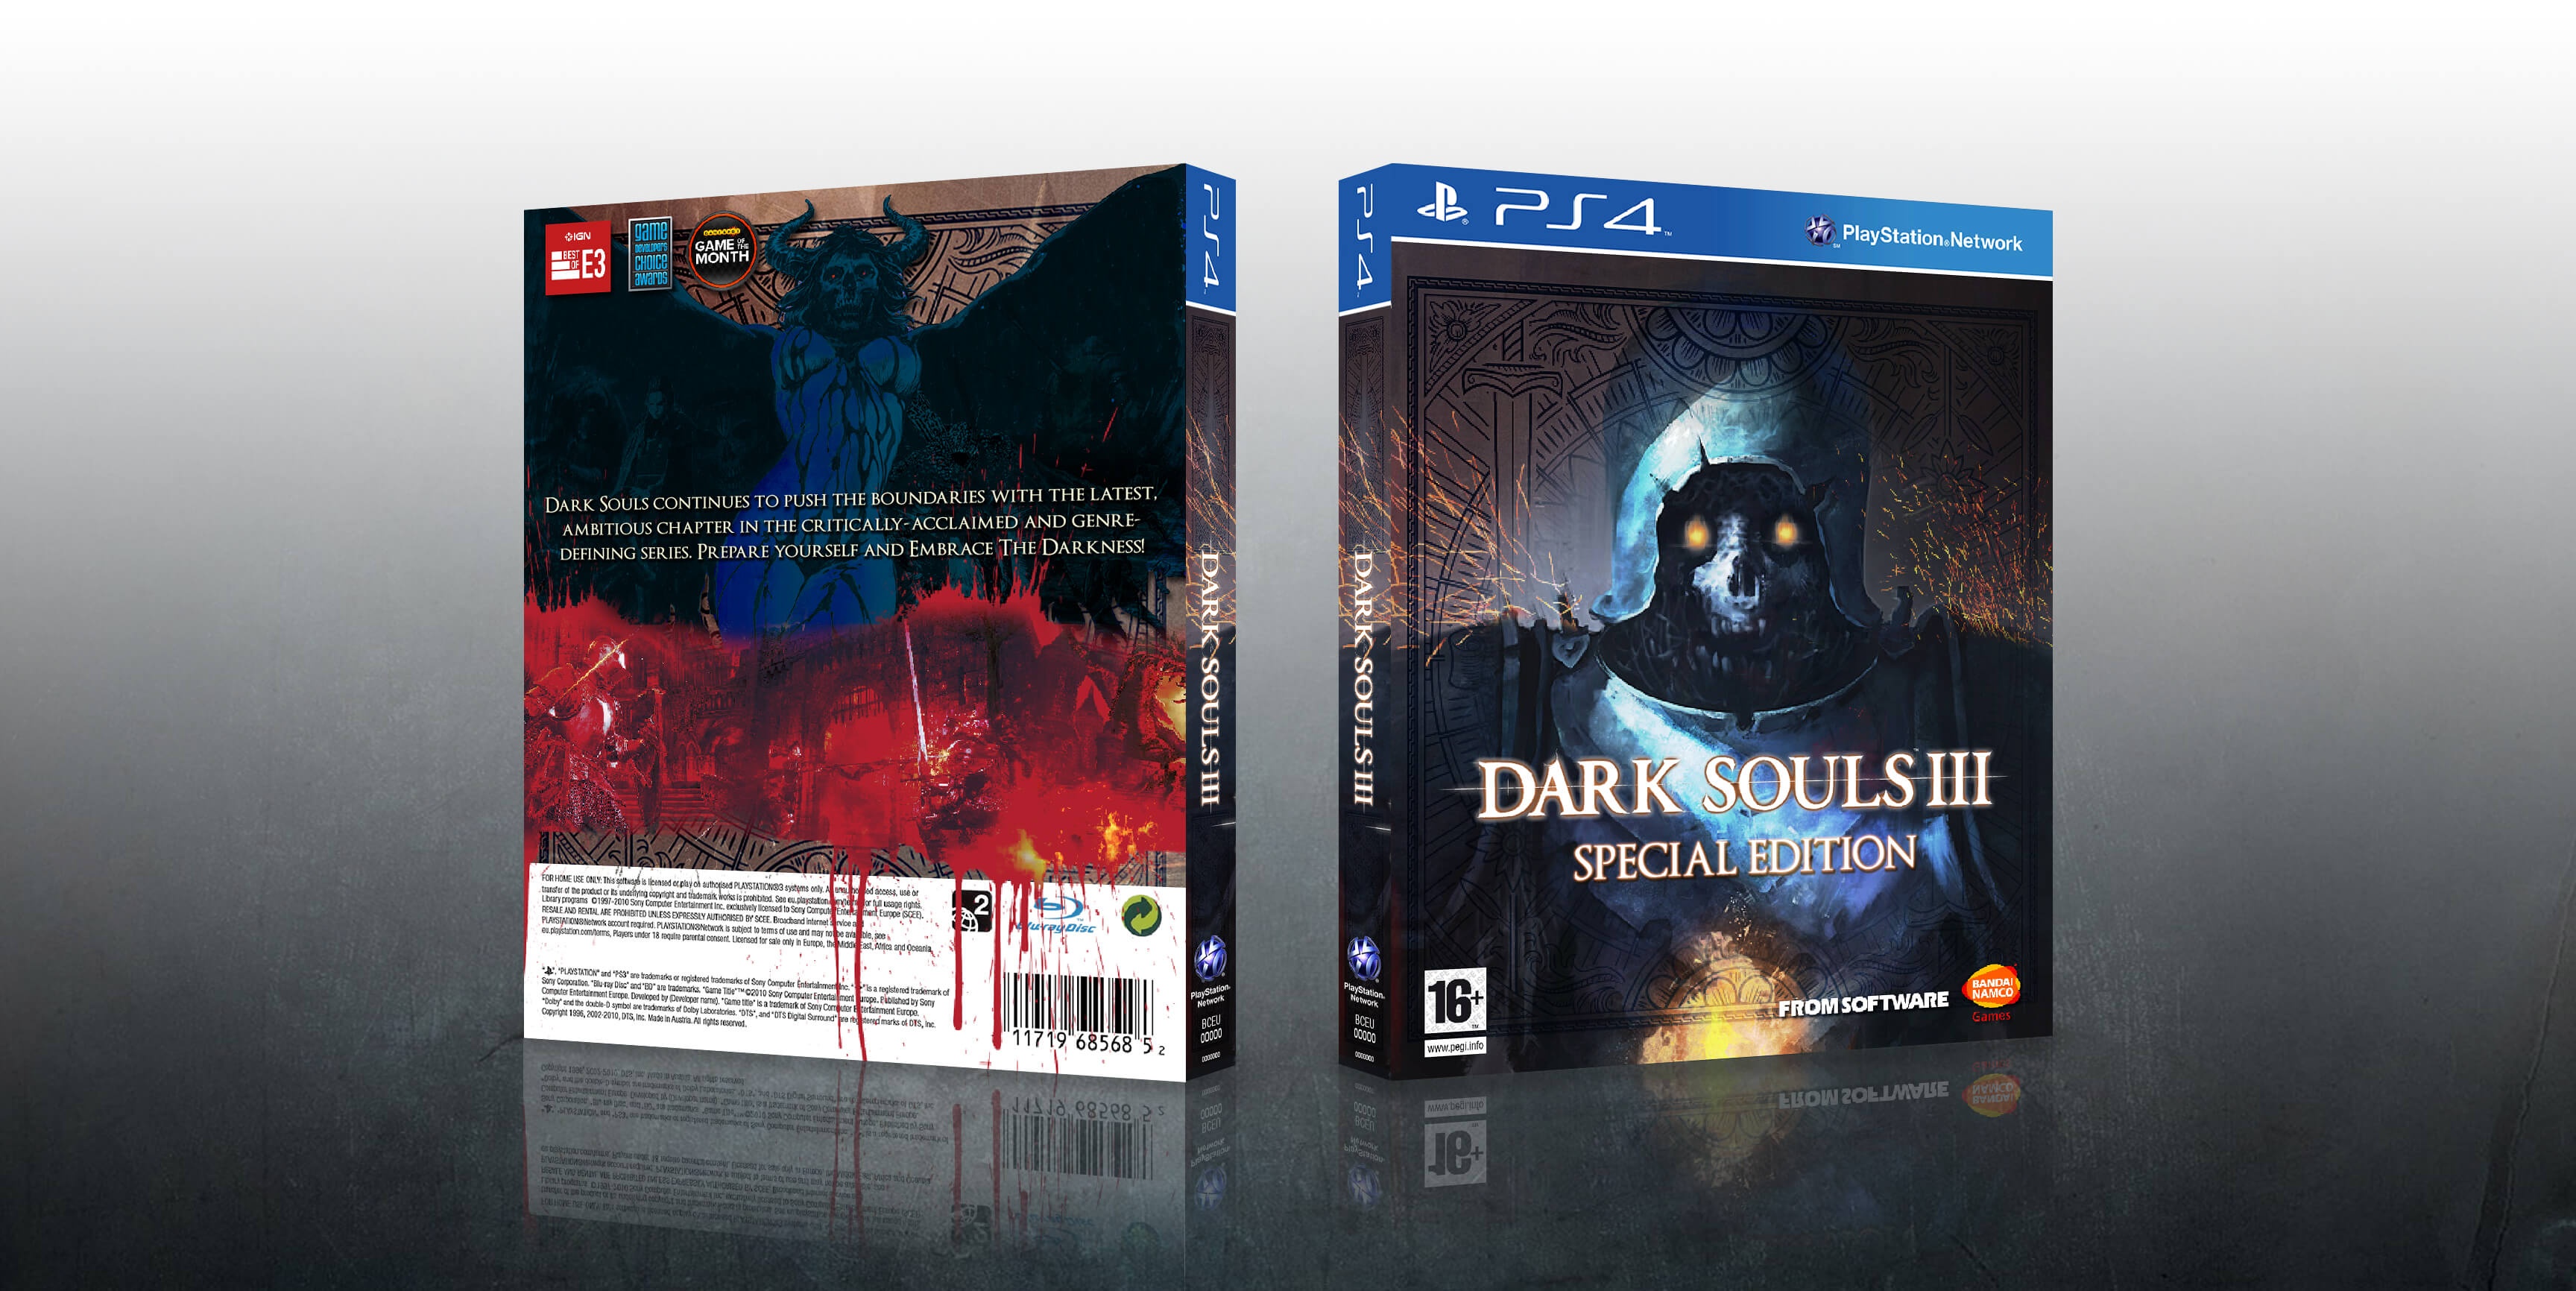 Dark Souls III box cover